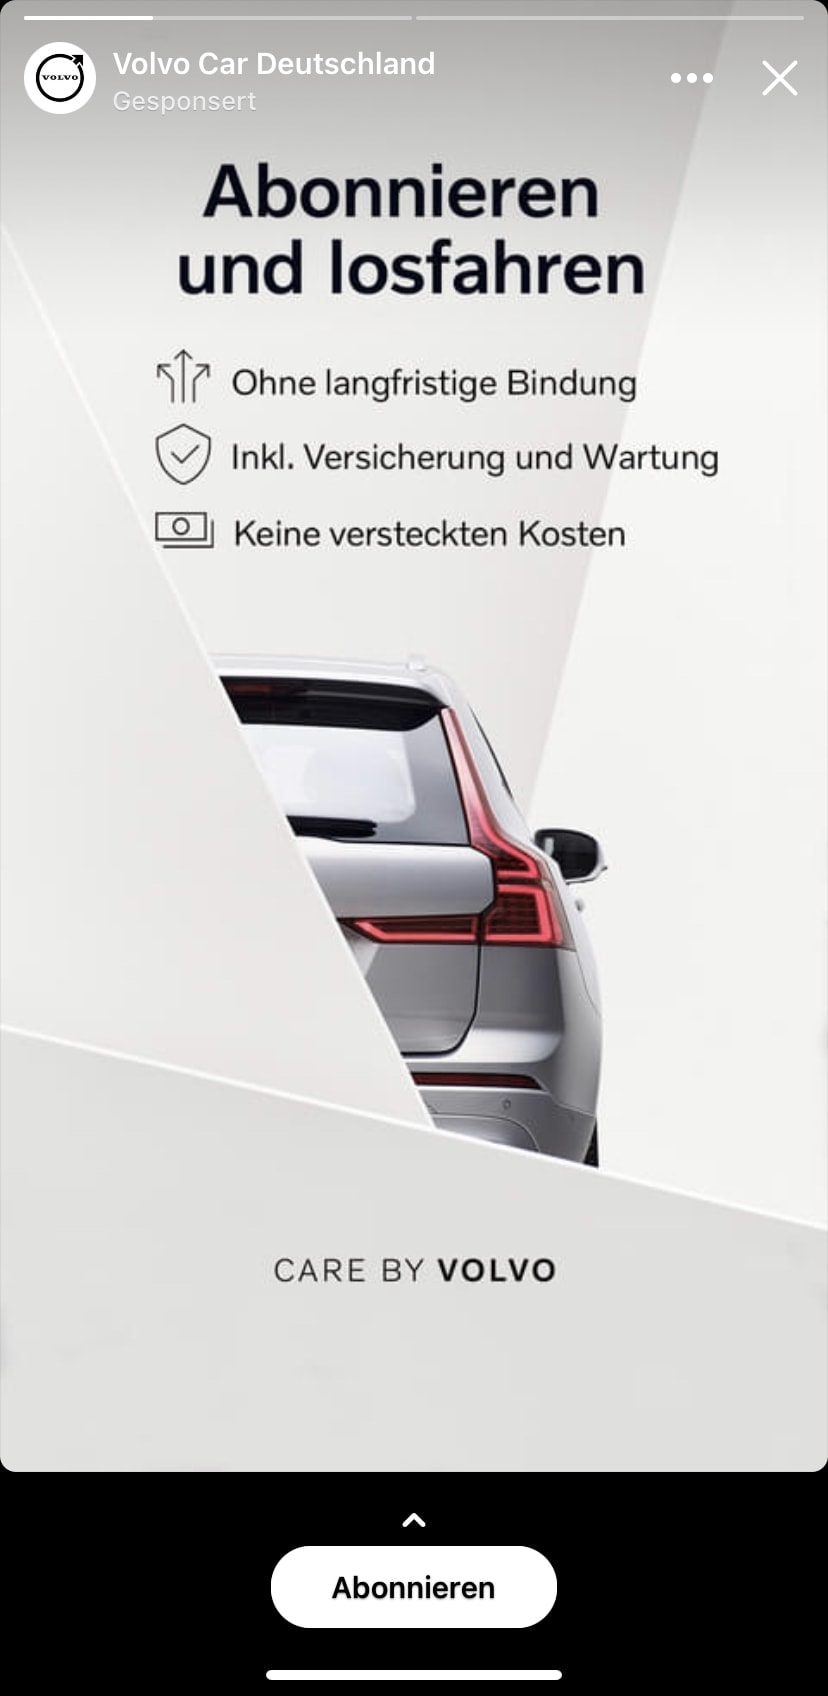 Beispiel-Ad von Volvo Deutschland